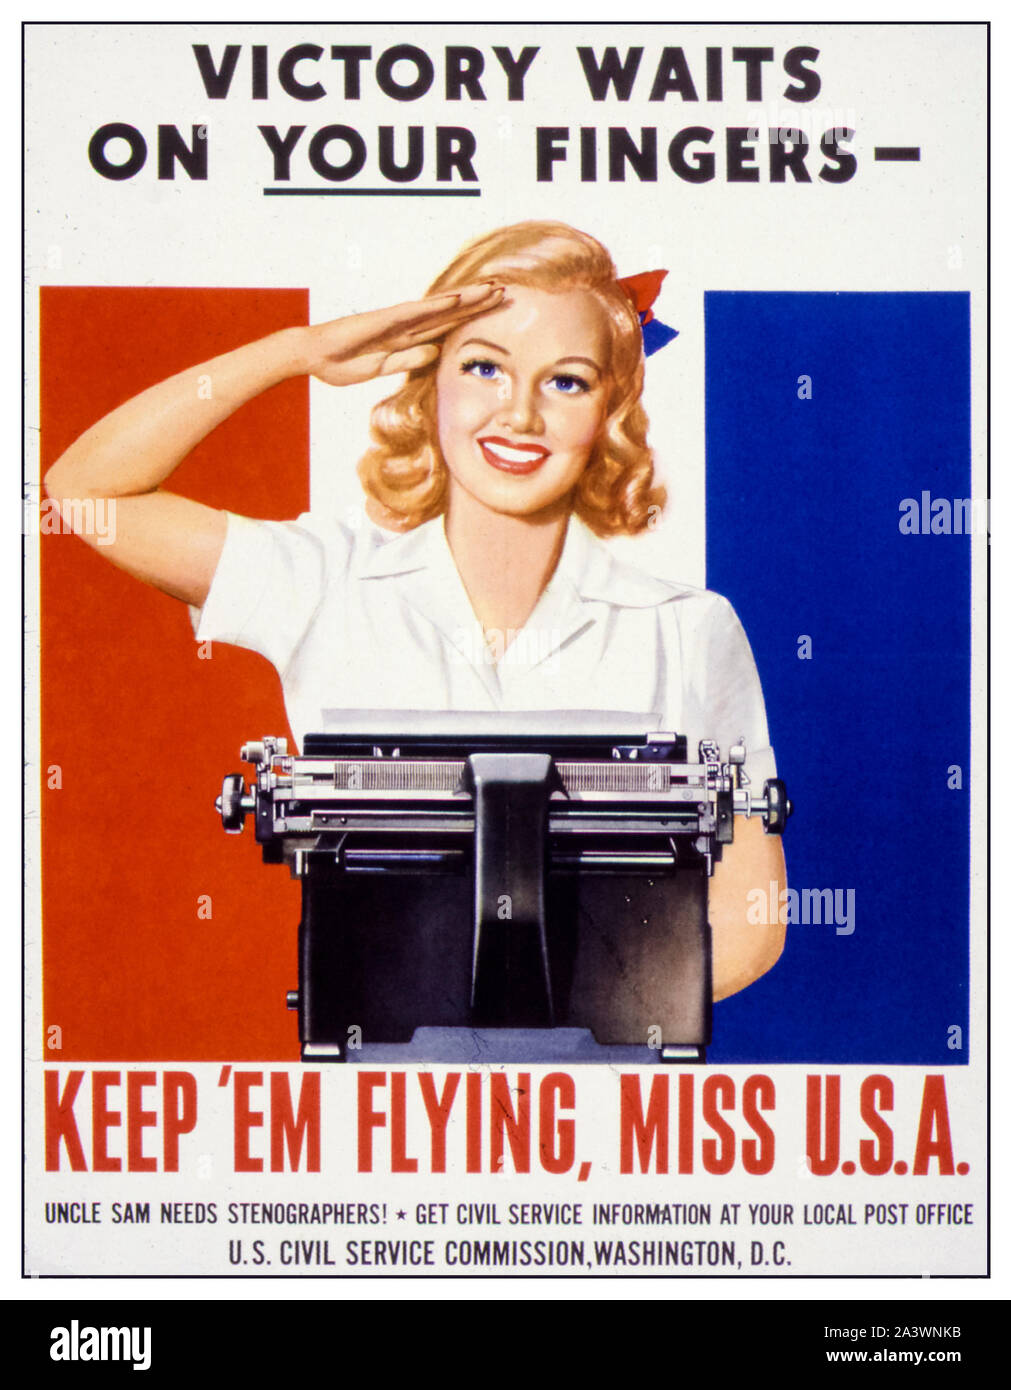 American, US, WW2, Female segretario reclutamento poster, Vittoria attende sulle vostre dita, Keep 'em Flying Miss USA, (donna dietro macchina da scrivere), 1941-1945 Foto Stock